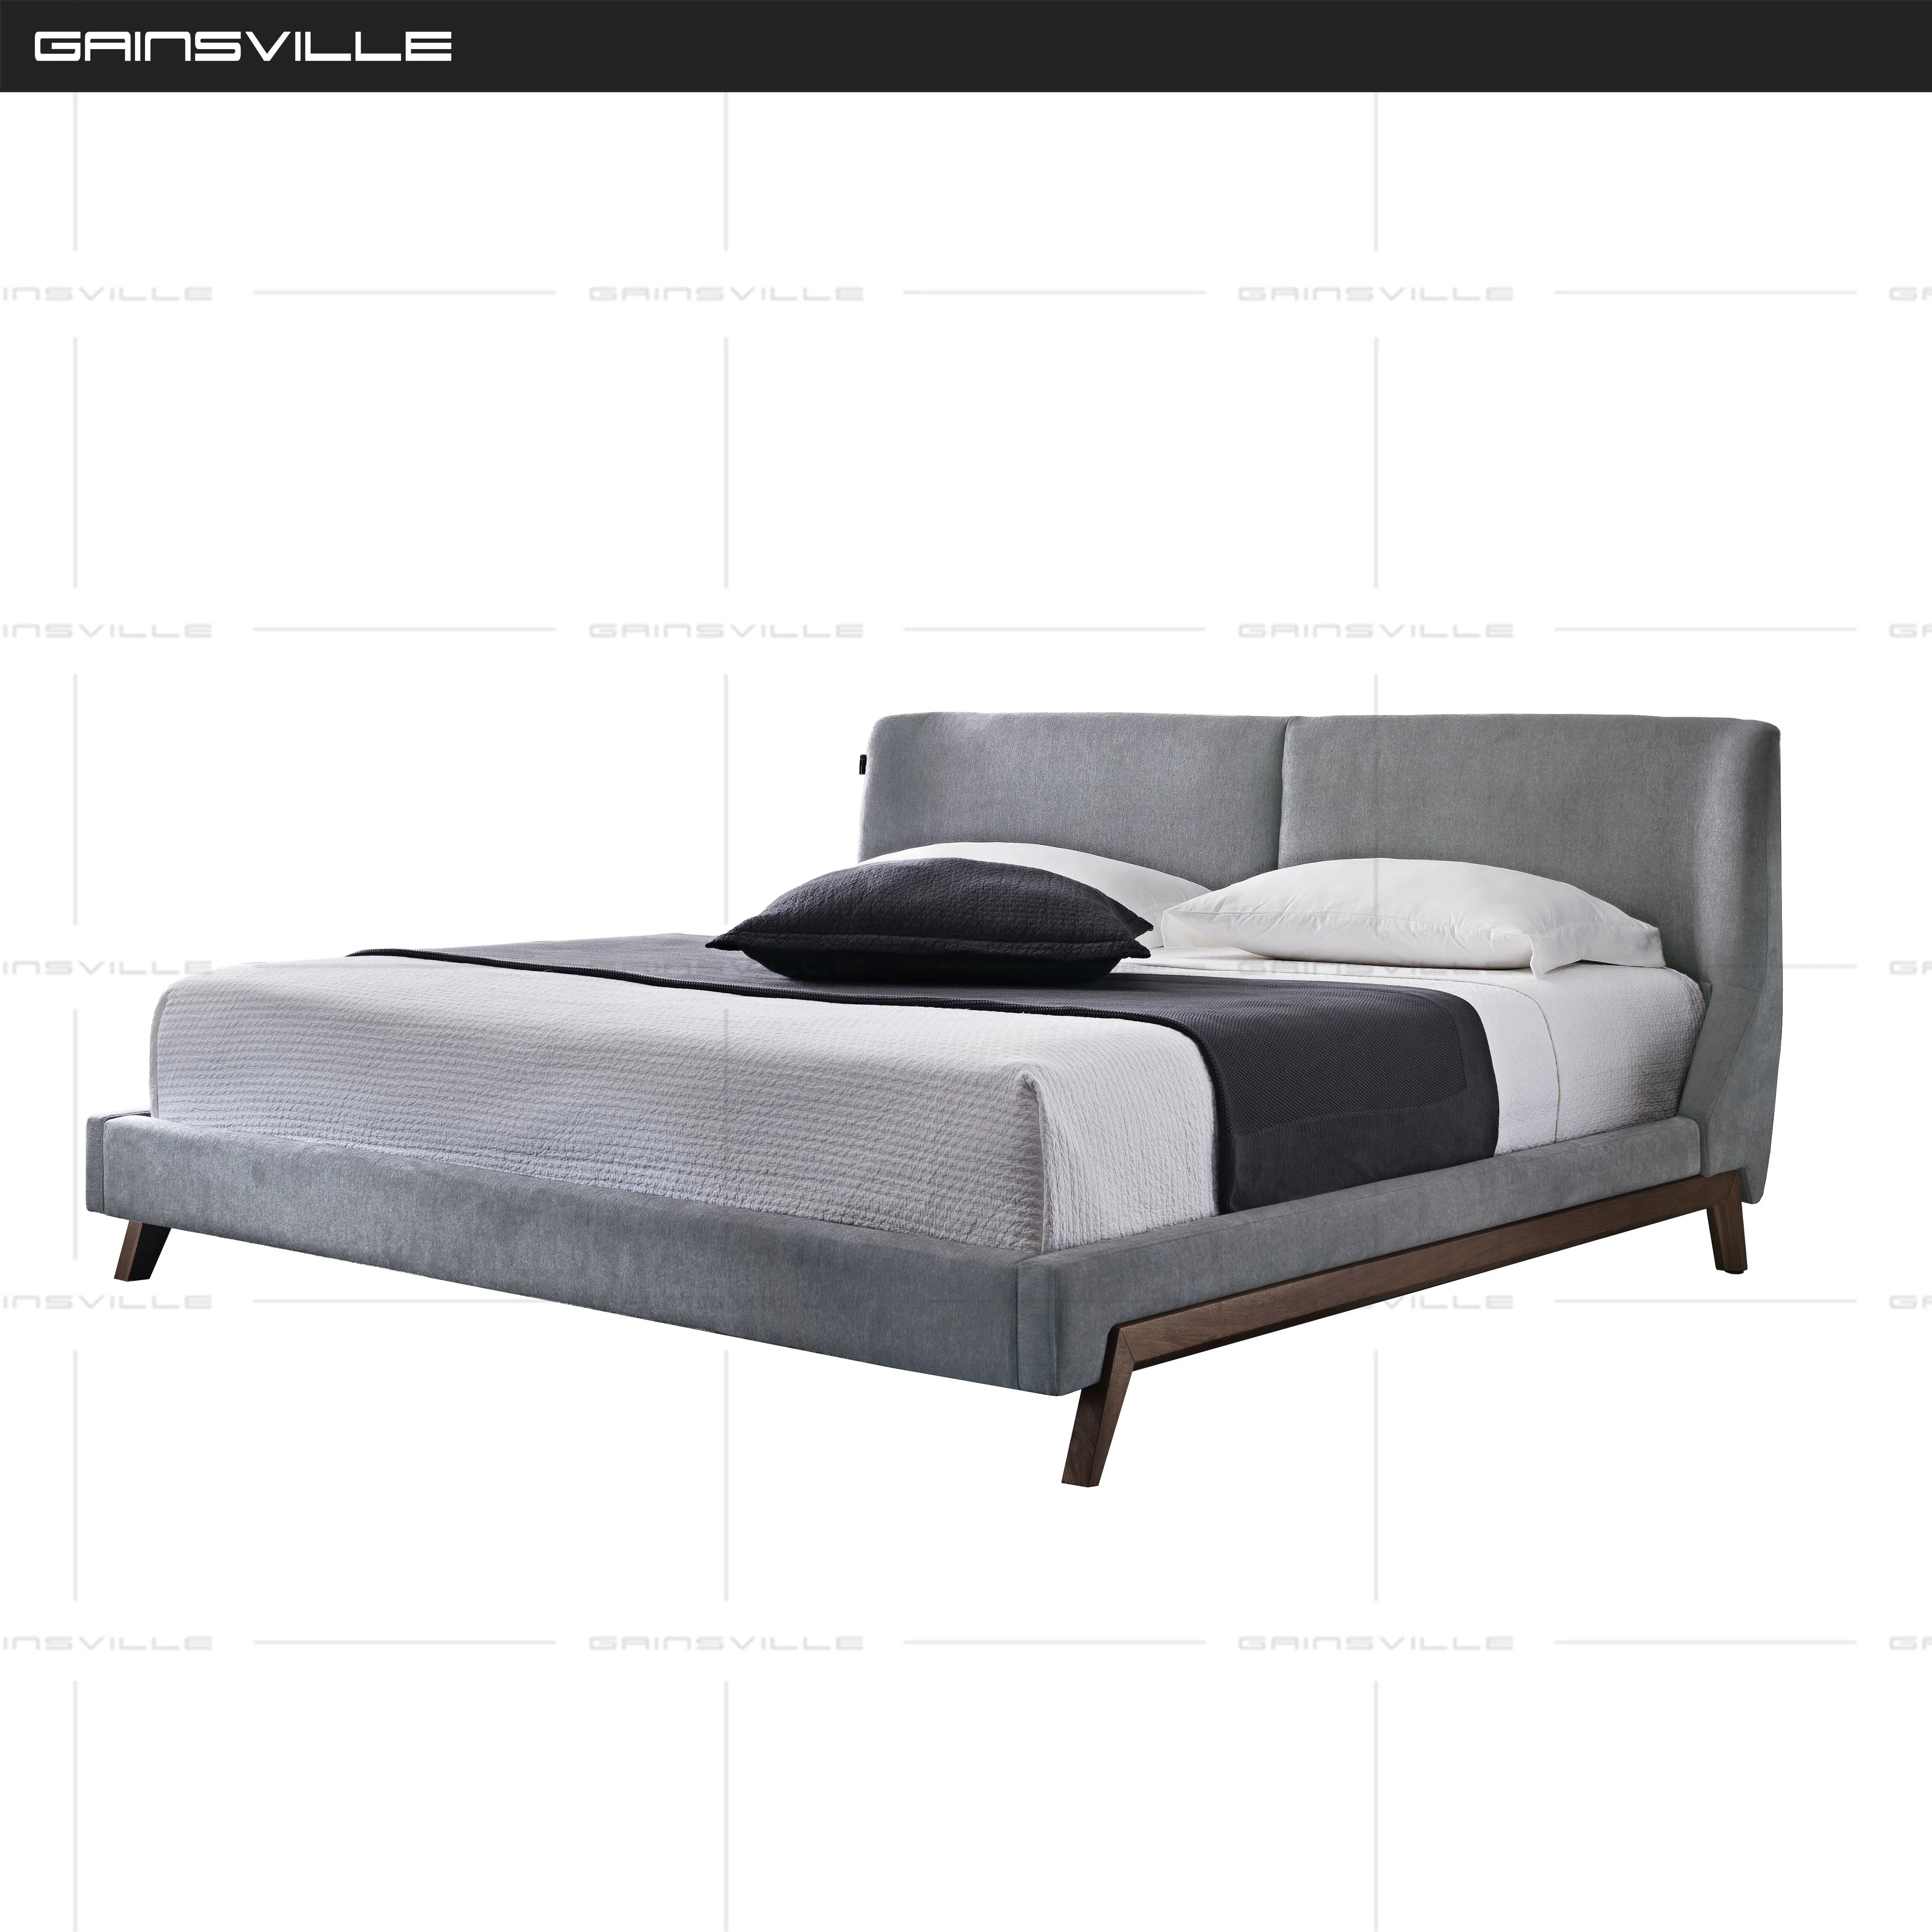 Горячая продажа кровать кинг-сайз спальни с двуспальными кроватями мебель современная мебель в стиле моды